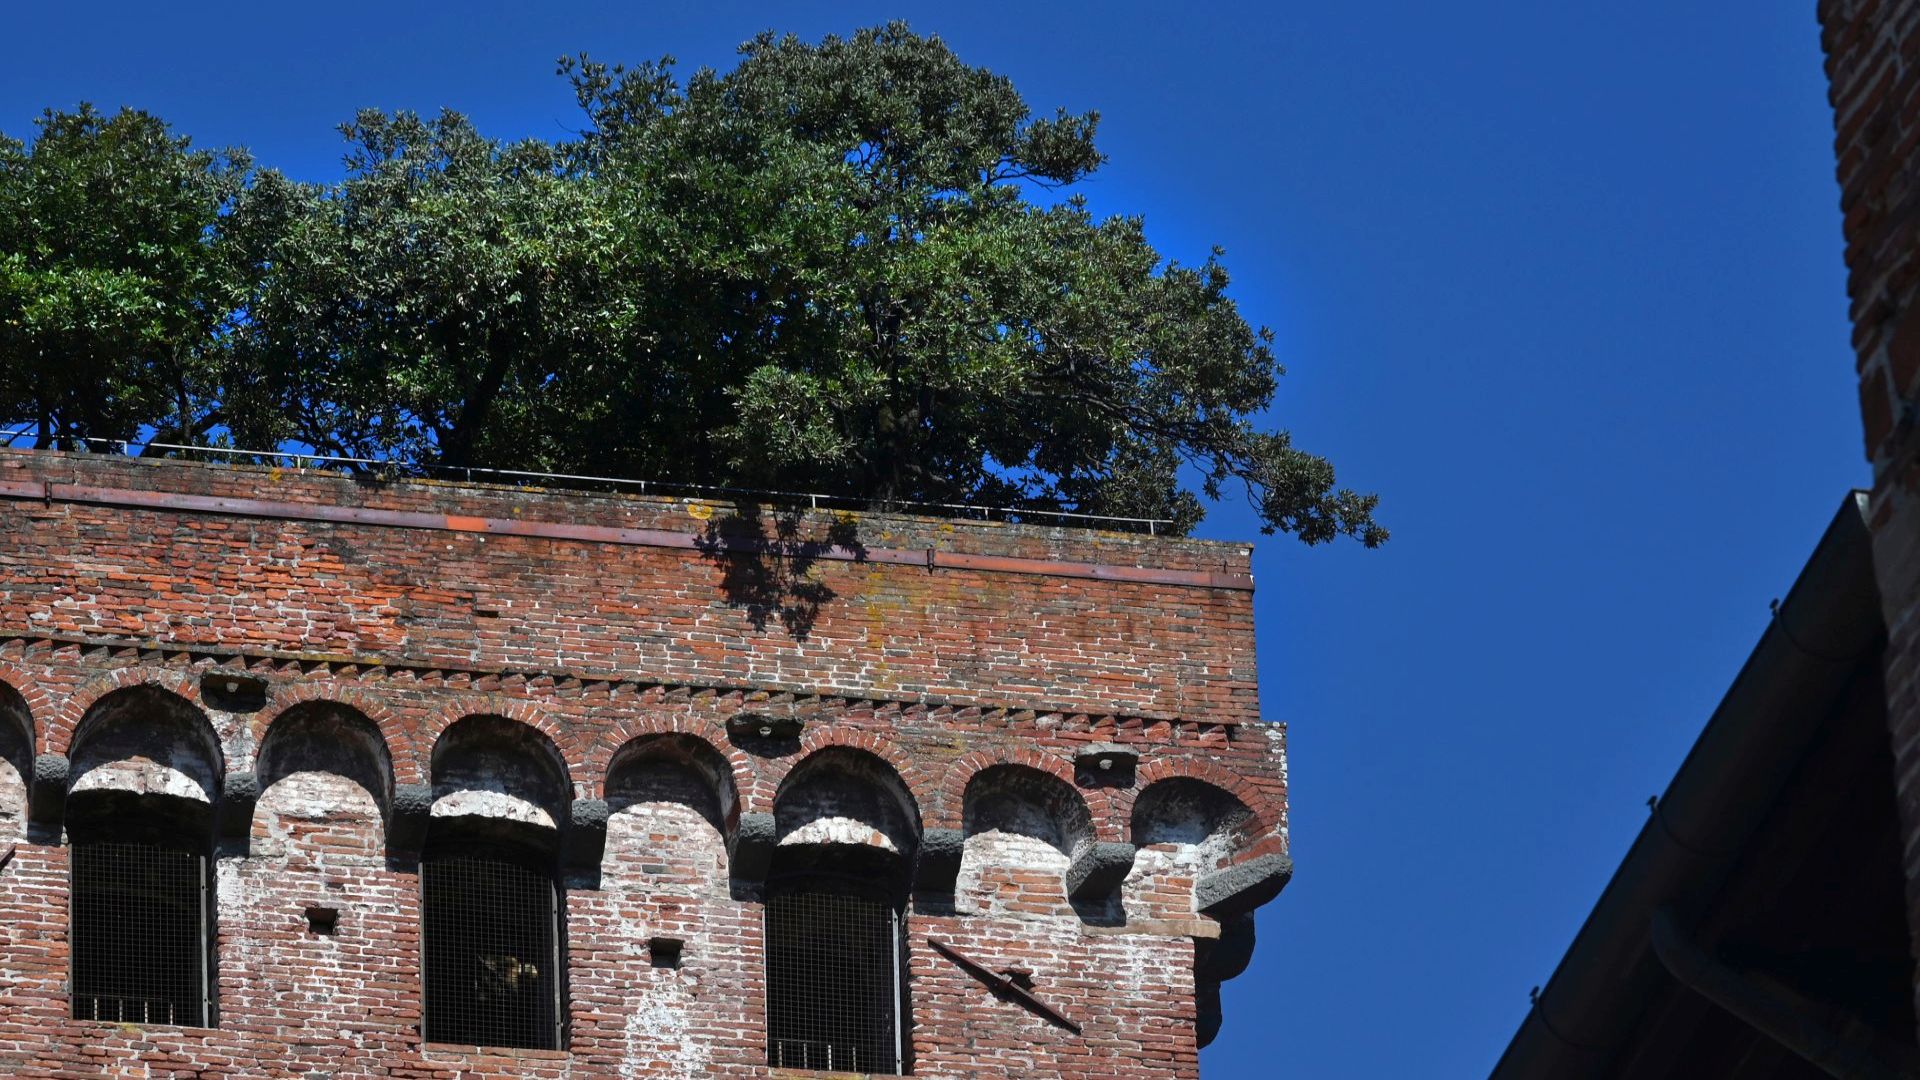 Canopée de chênes verts sur la tour Guinigi de Lucca